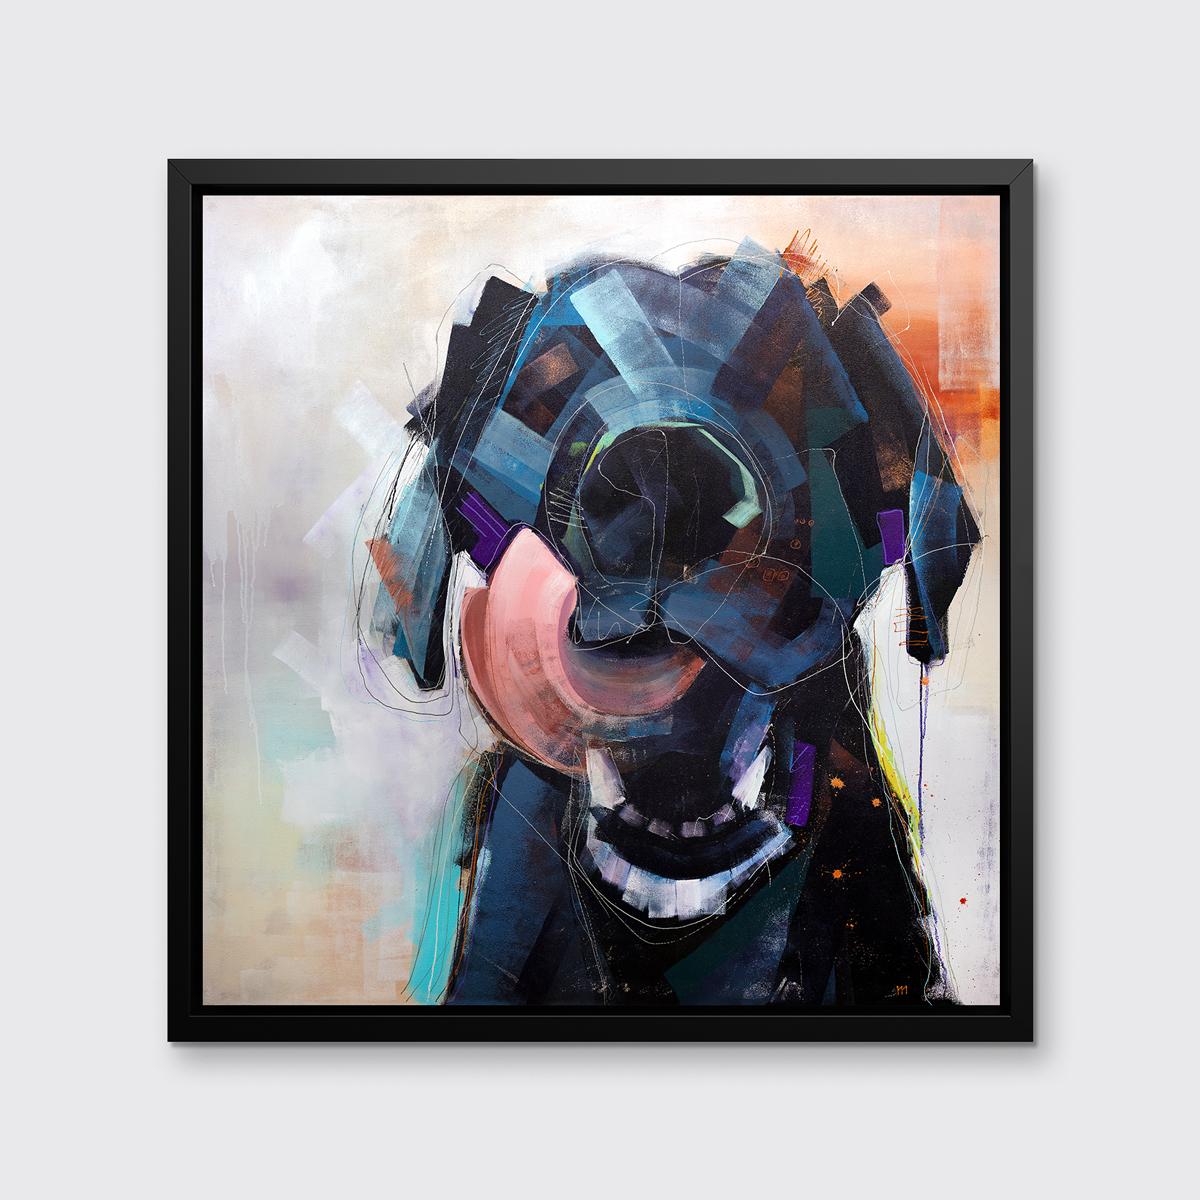 Cette impression abstraite d'un chien par l'artiste Russell Miyaki présente une palette légère et colorée et des éléments libres, expressifs et ludiques pour créer une composition énergique d'un chien se léchant les babines avec sa langue